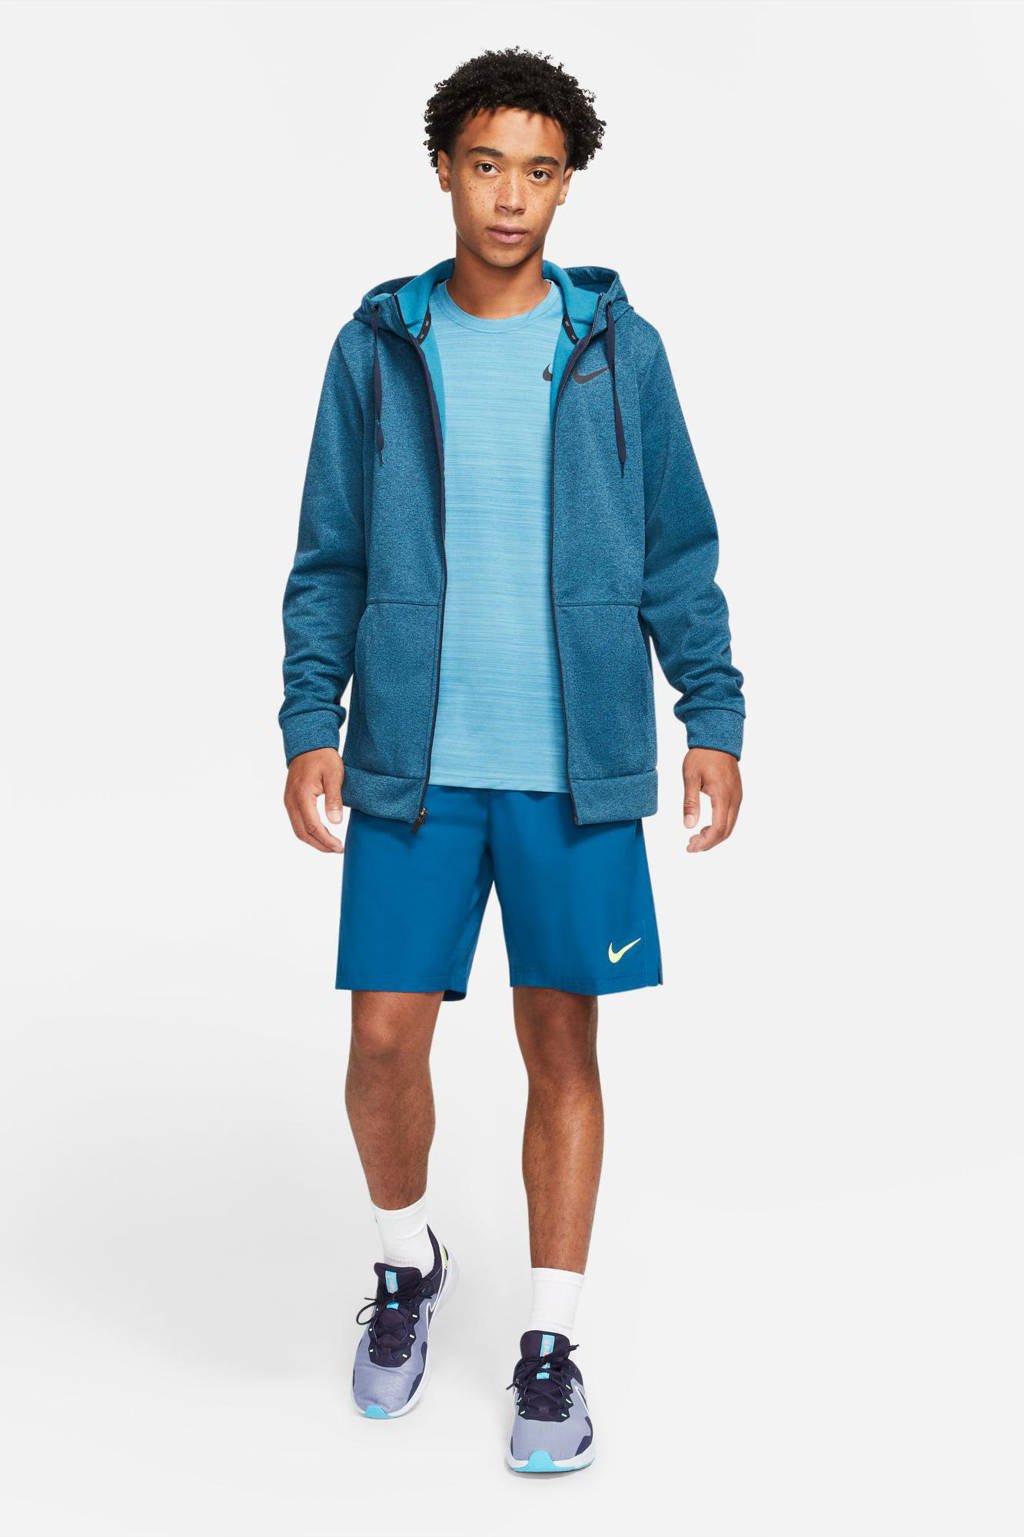 Petrolkleurige heren Nike sportvest van polyester met melée print, lange mouwen, capuchon en ritssluiting